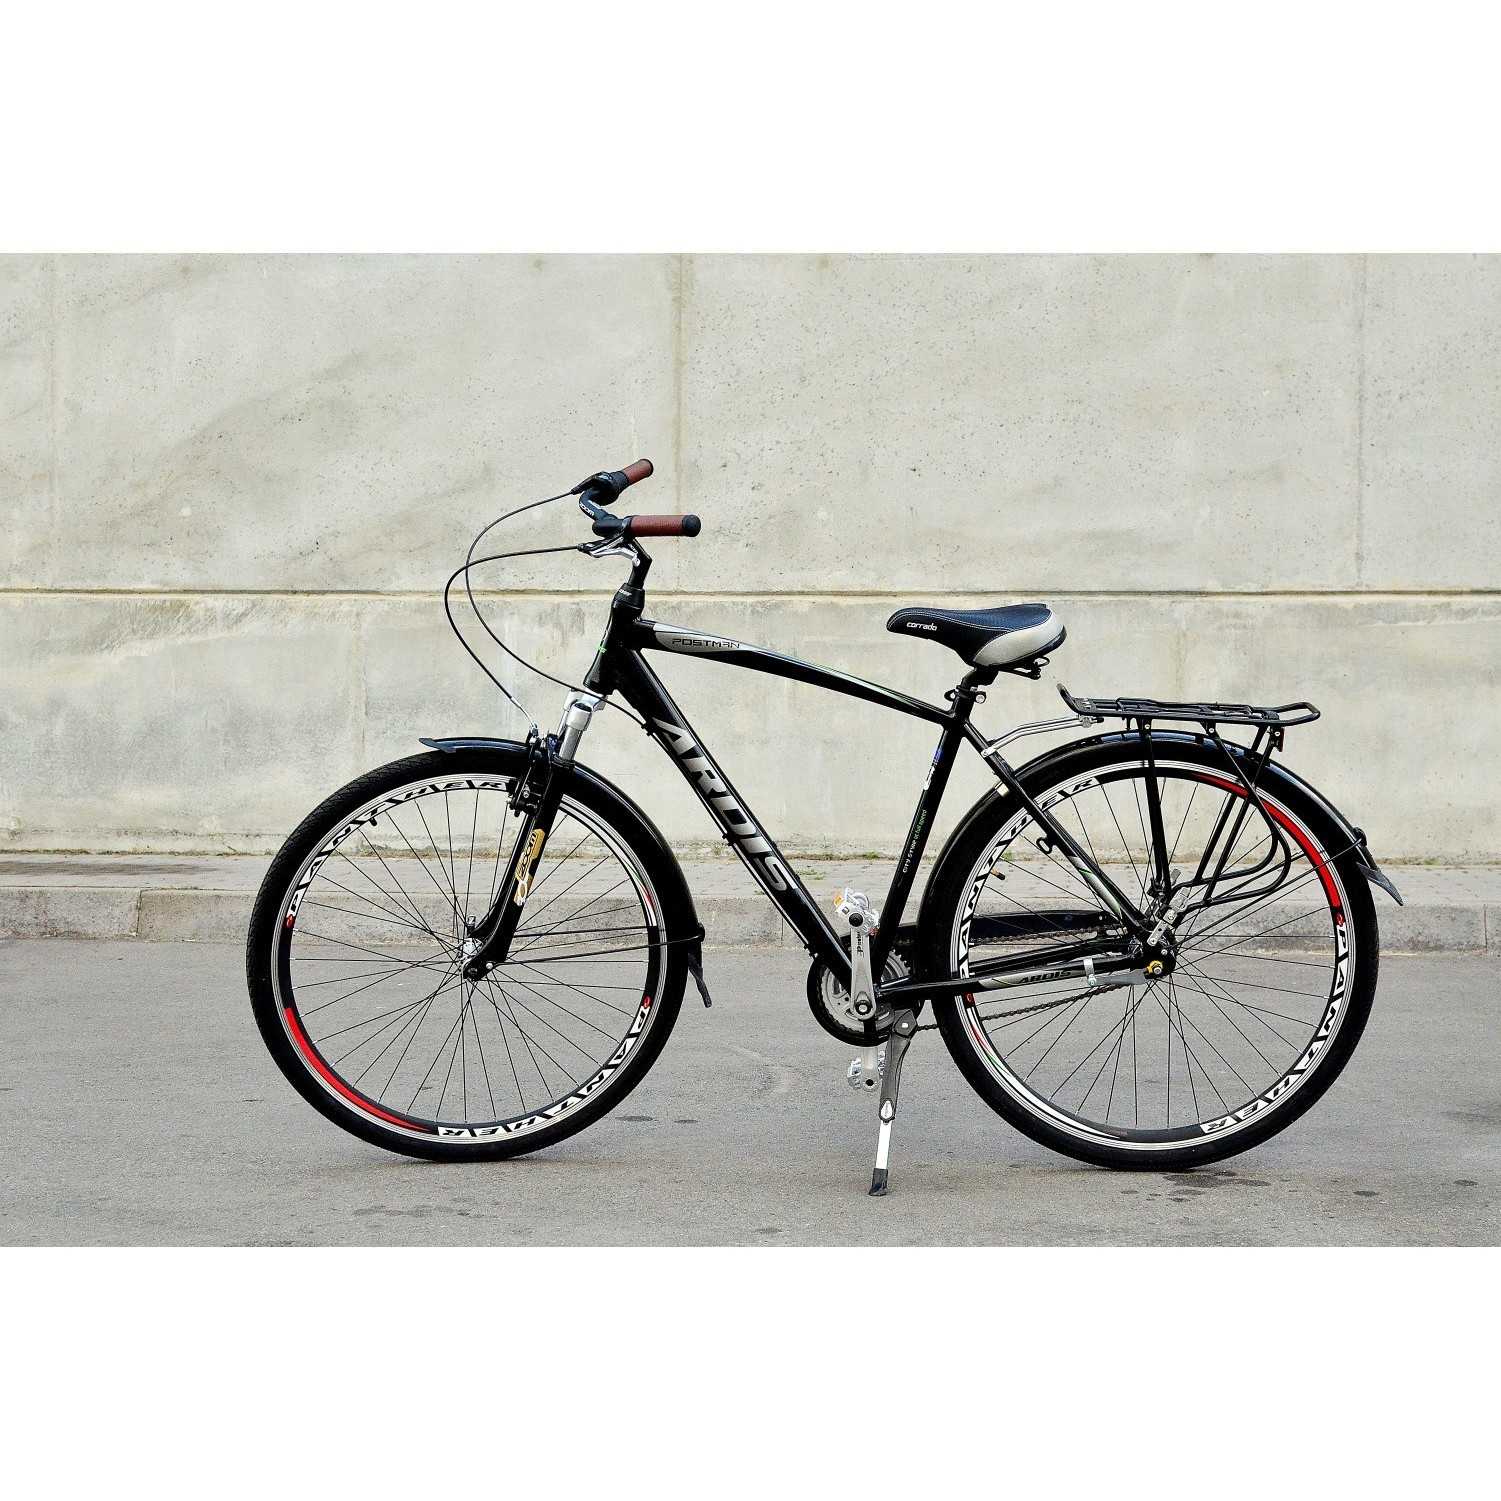 Велосипед ардис: отзывы о производителе ardis, популярные модели